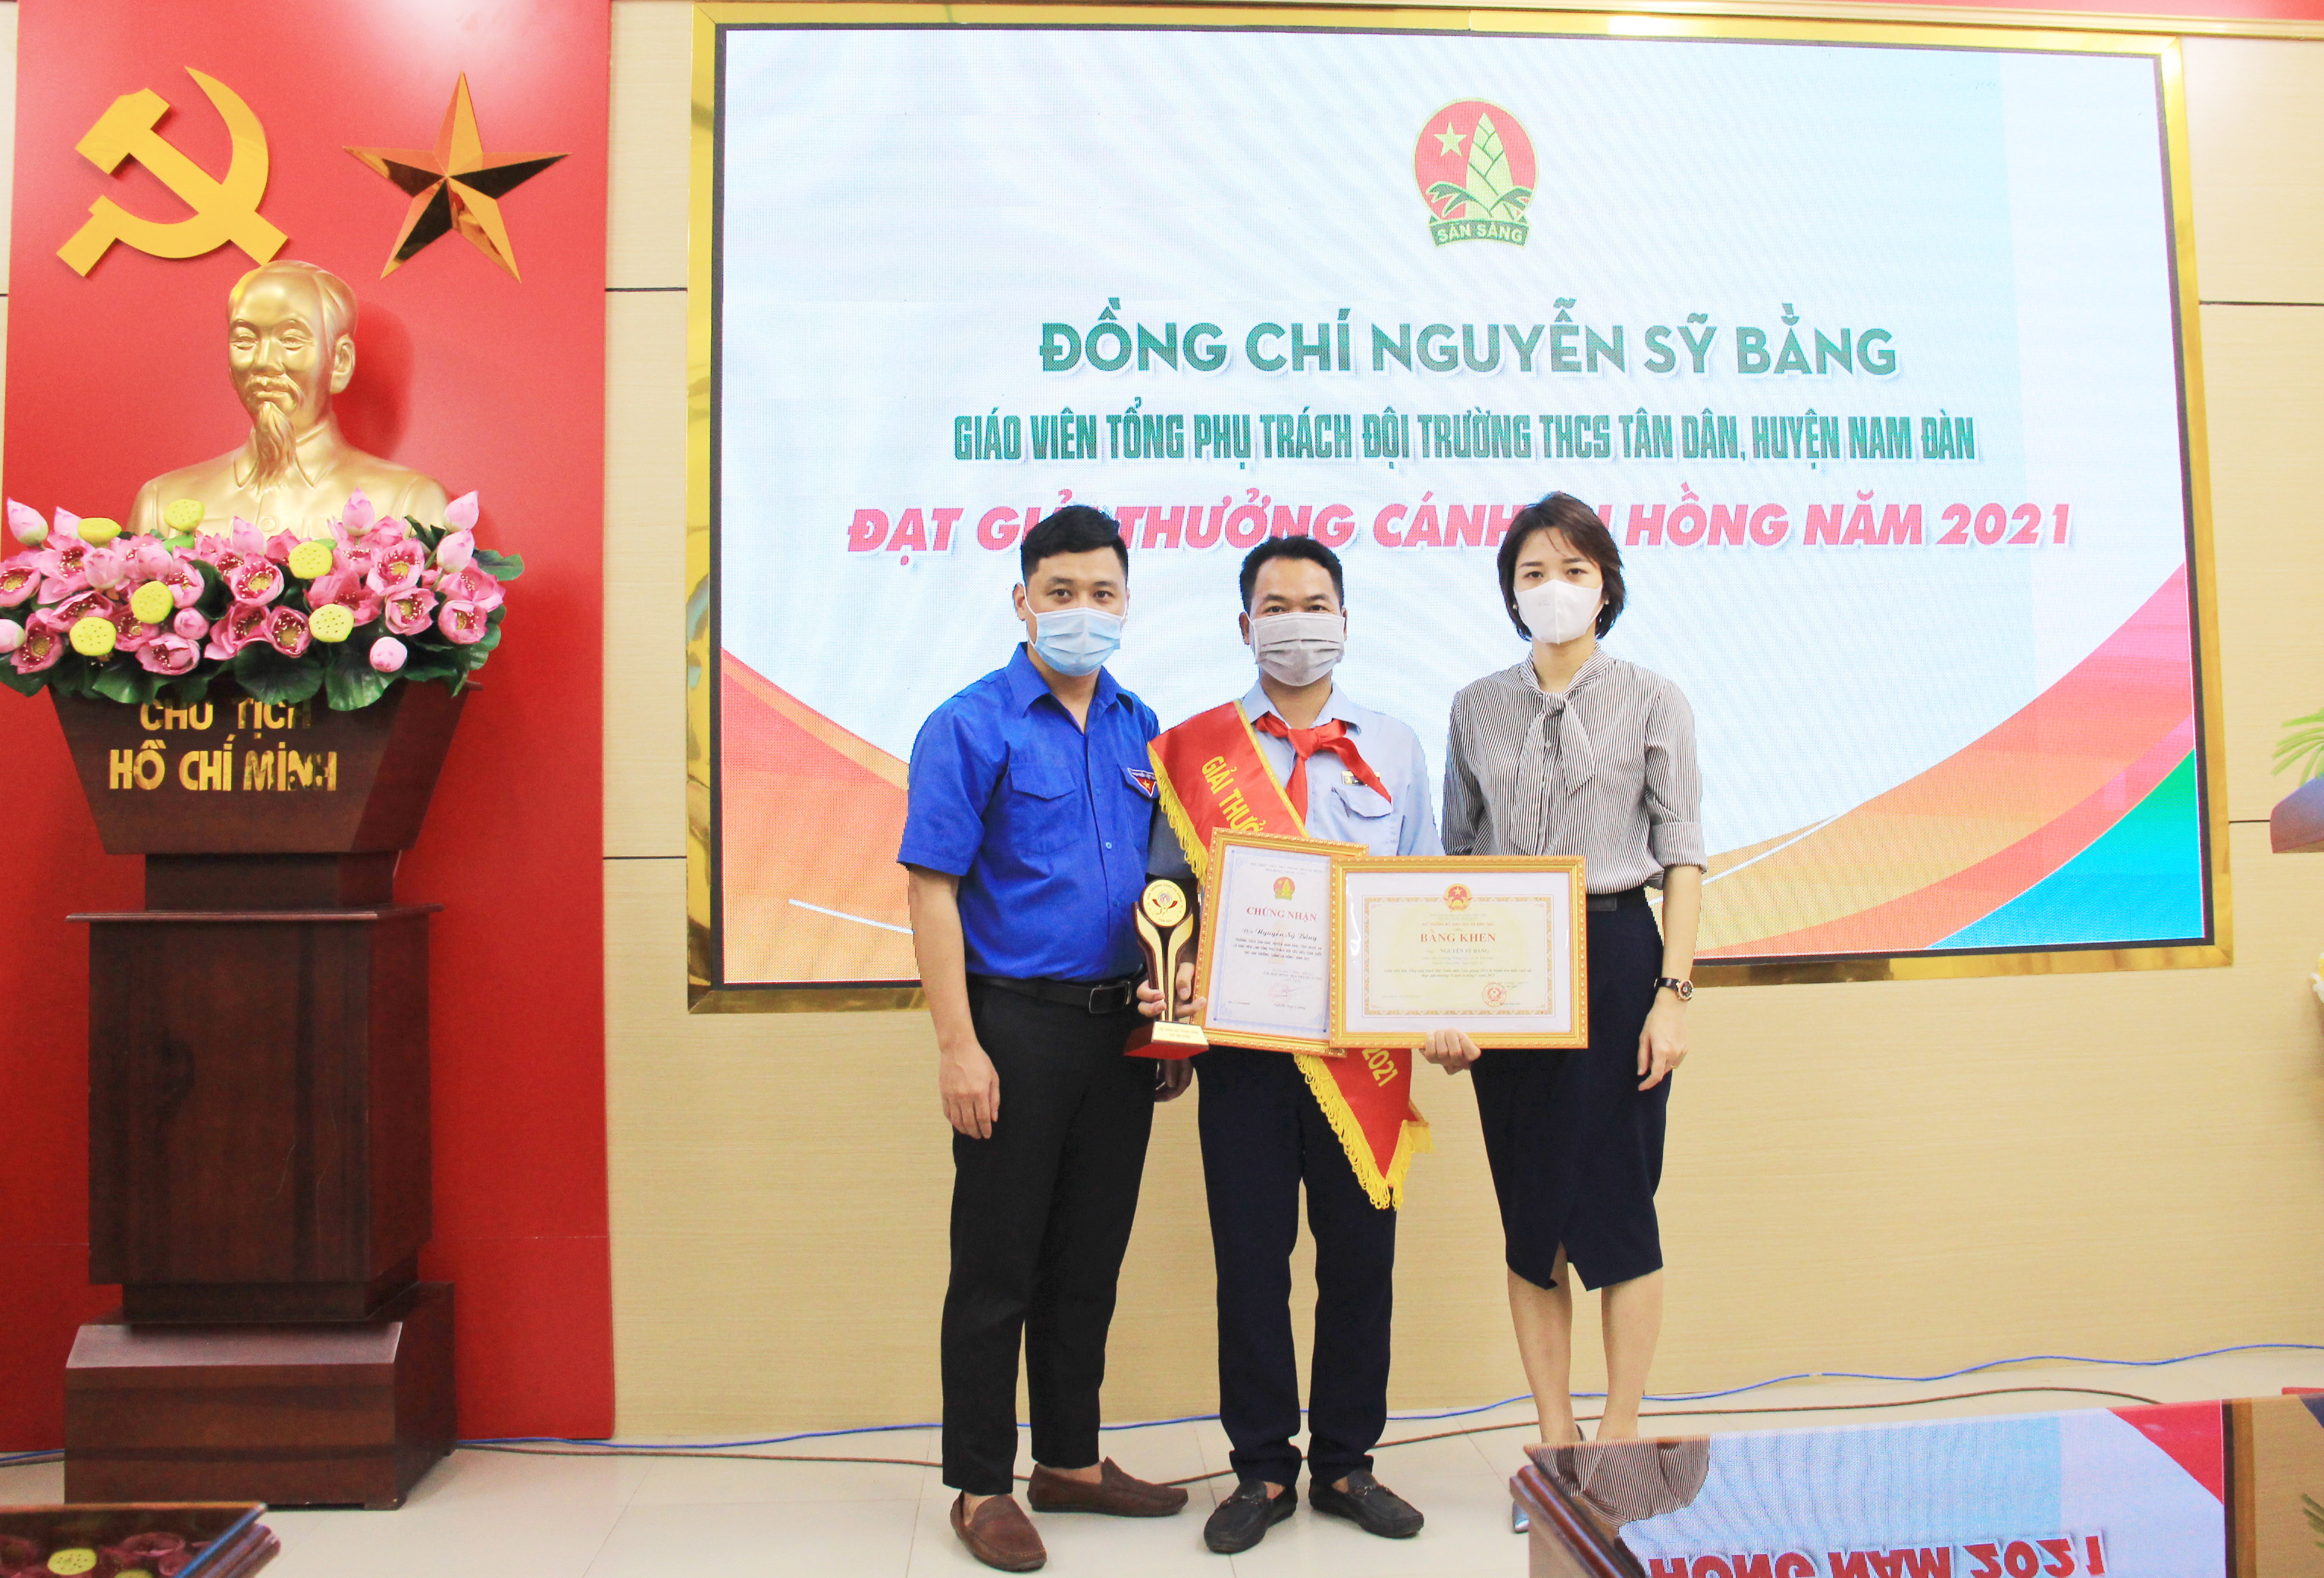 Đại diện Sở Giáo dục Nghệ An thừa ủy quyền trao tặng Bằng khen của Bộ Giáo dục cho thầy giáo Nguyễn Sỹ Bằng. Ảnh: Thanh Quỳnh